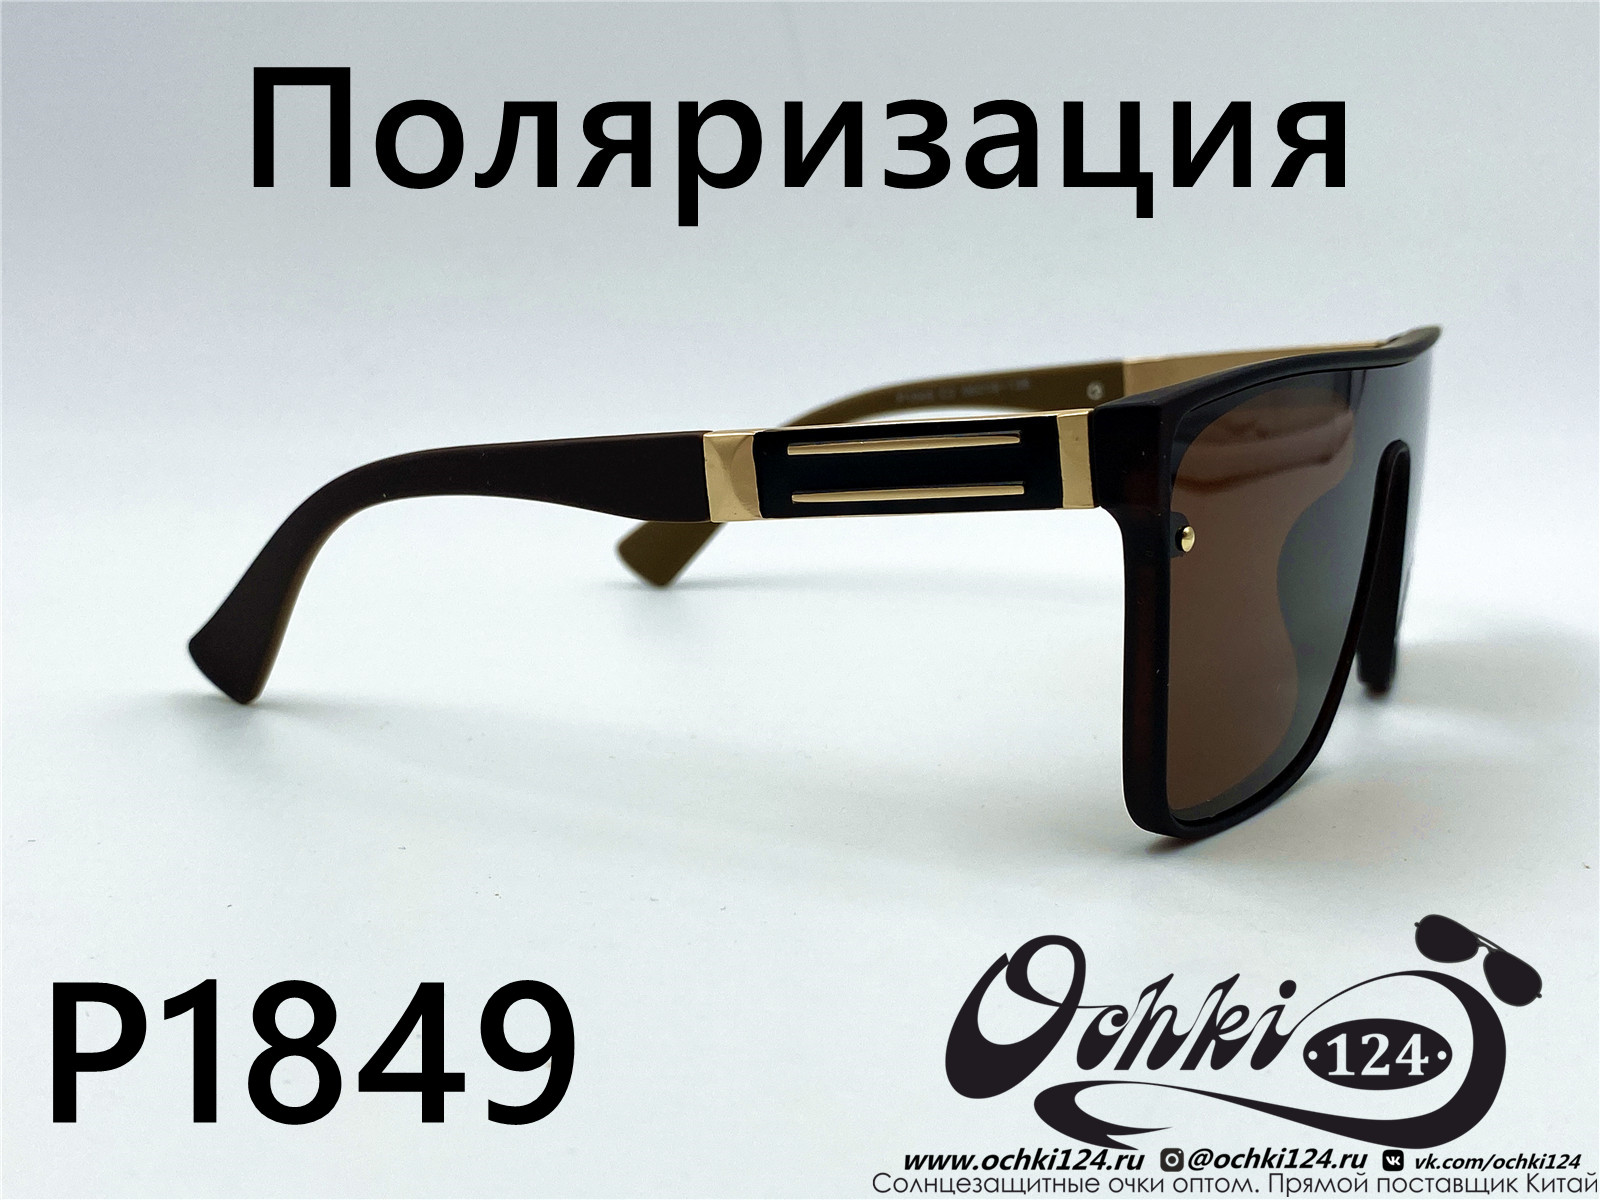  Солнцезащитные очки картинка 2022 Мужские Поляризованные Квадратные Matlrxs P1849-2 